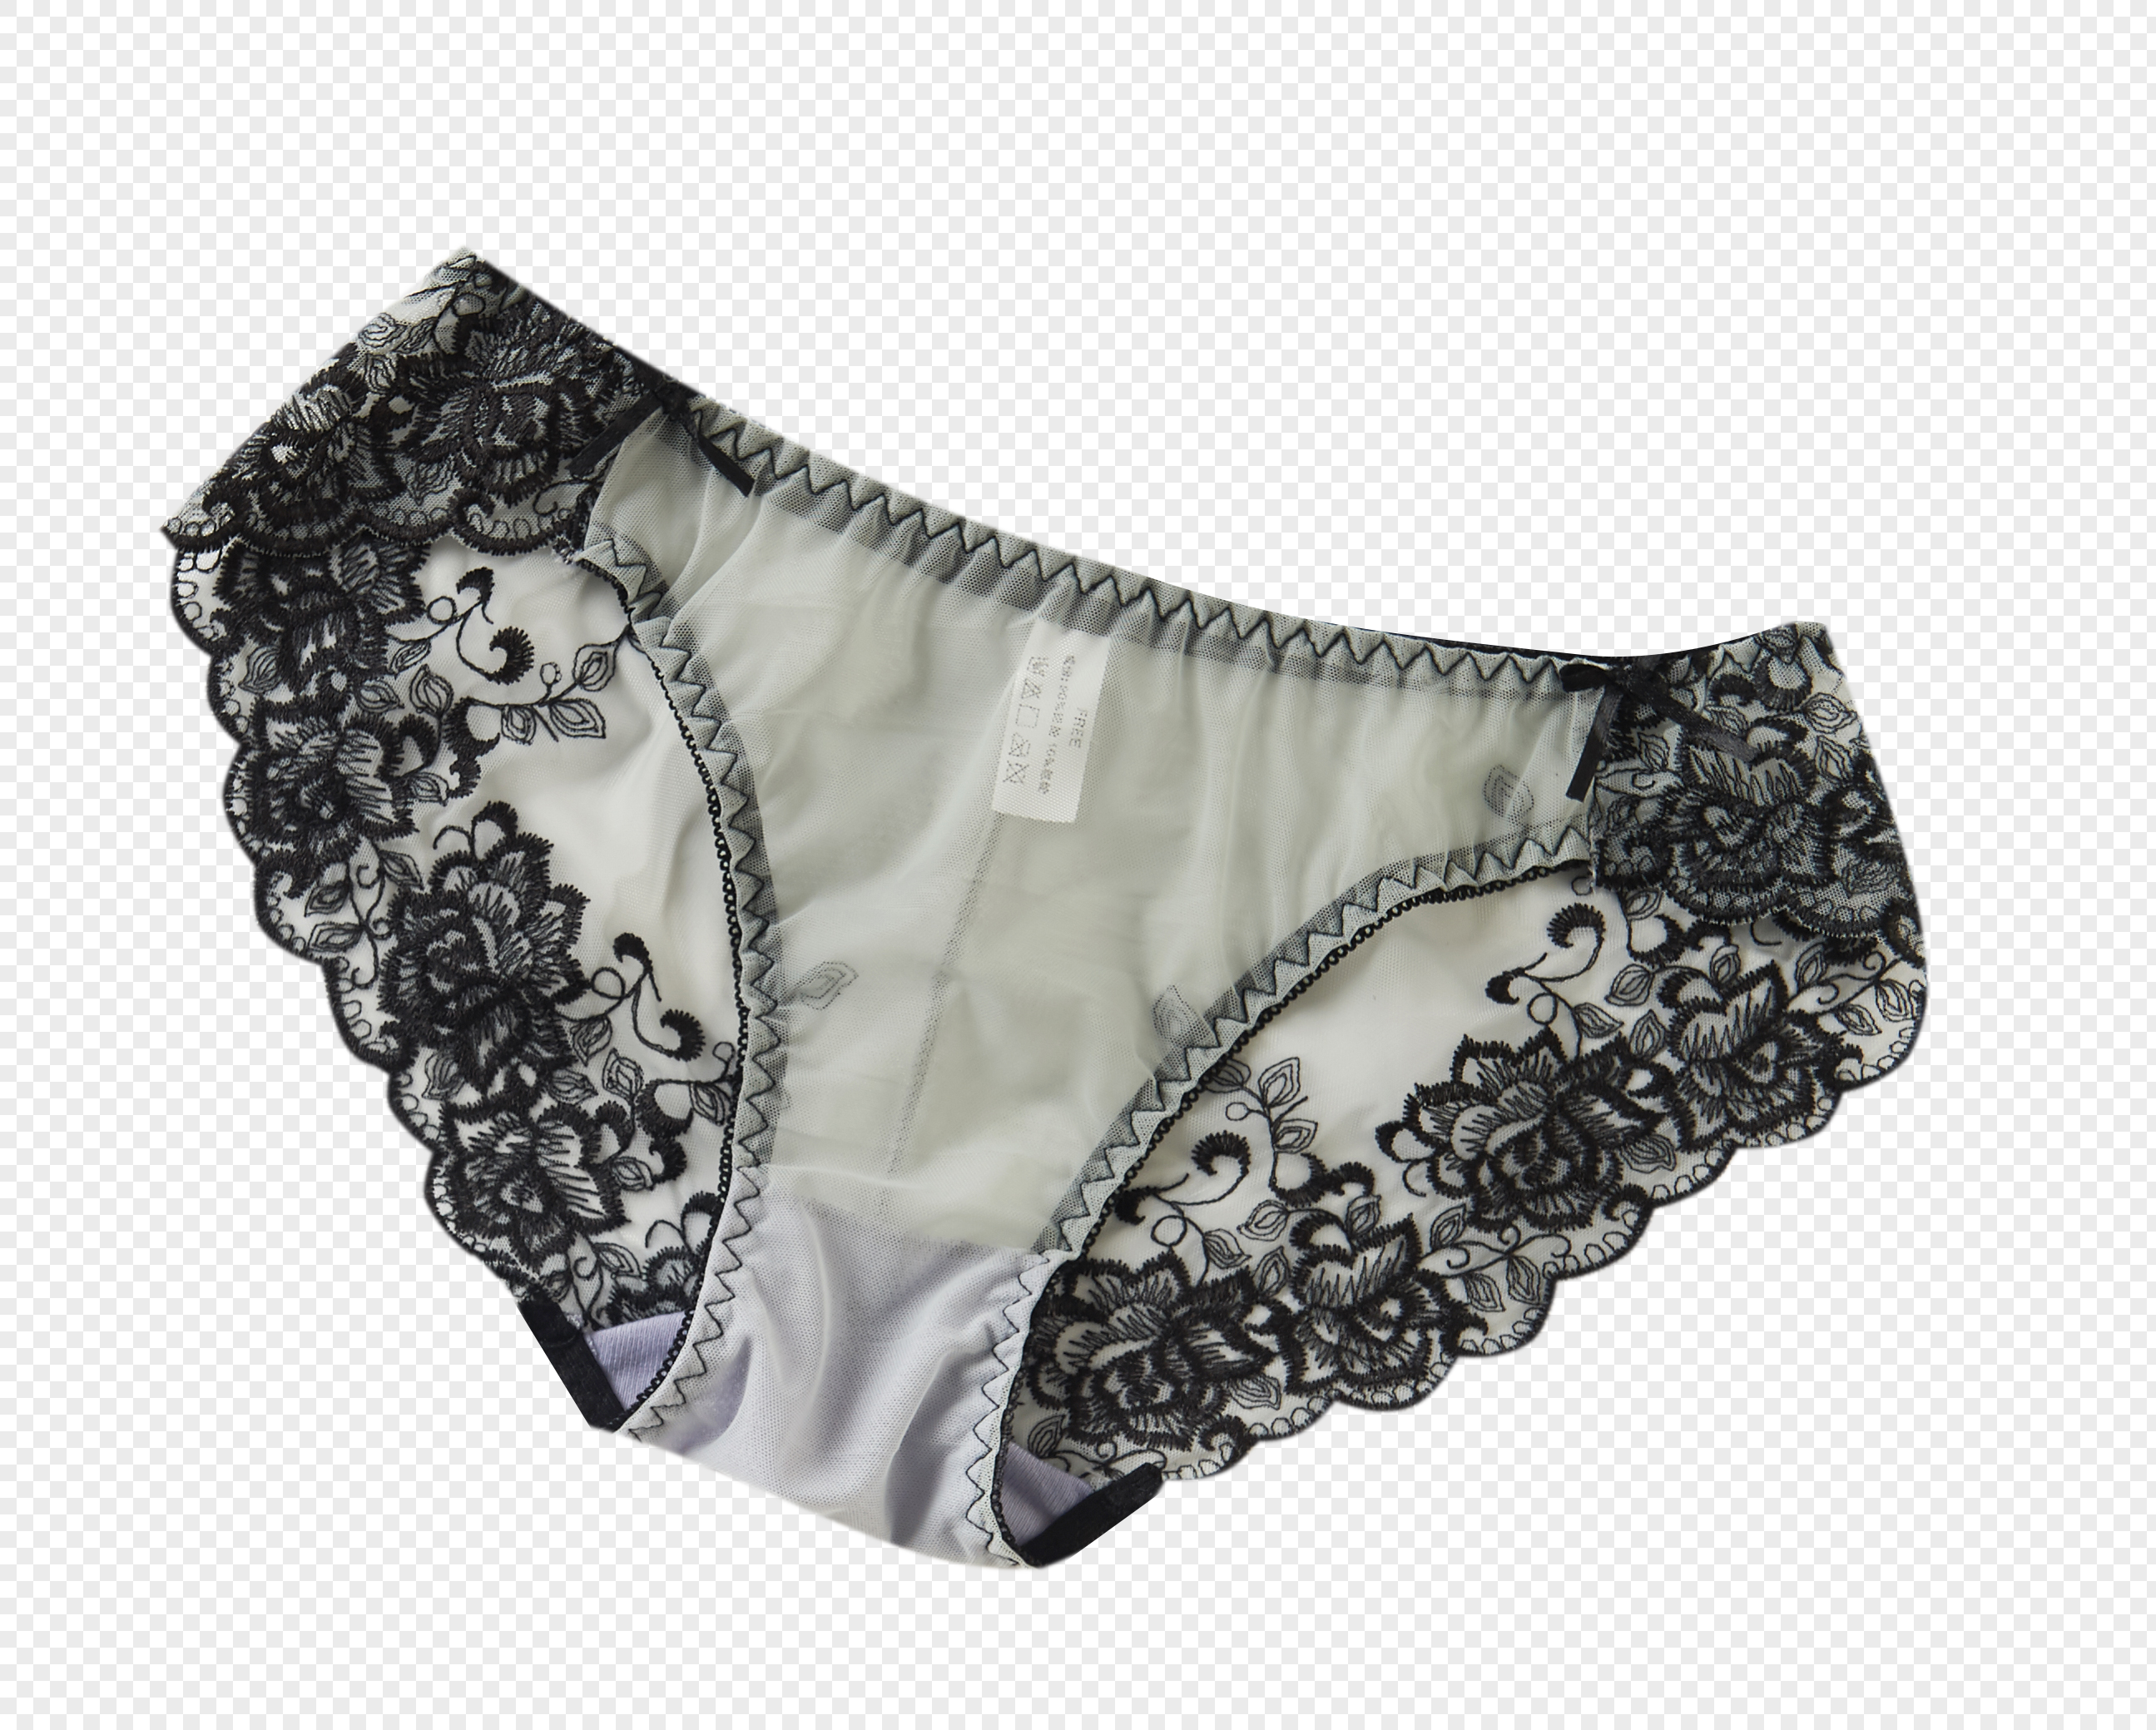 Women Underwear PNGs for Free Download